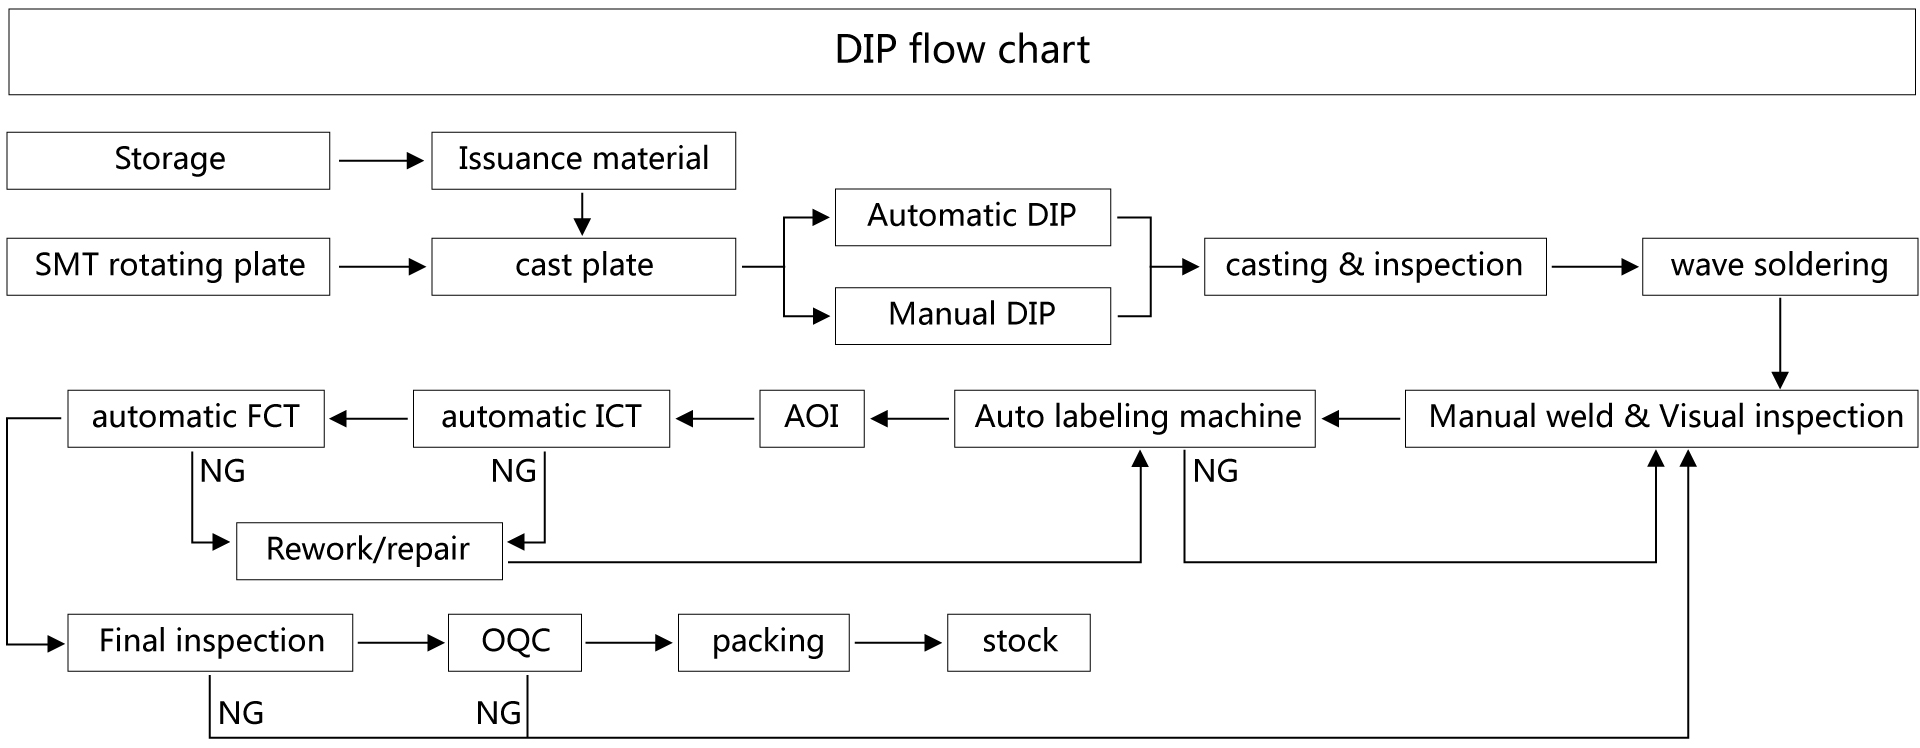 DIP process flow diagram